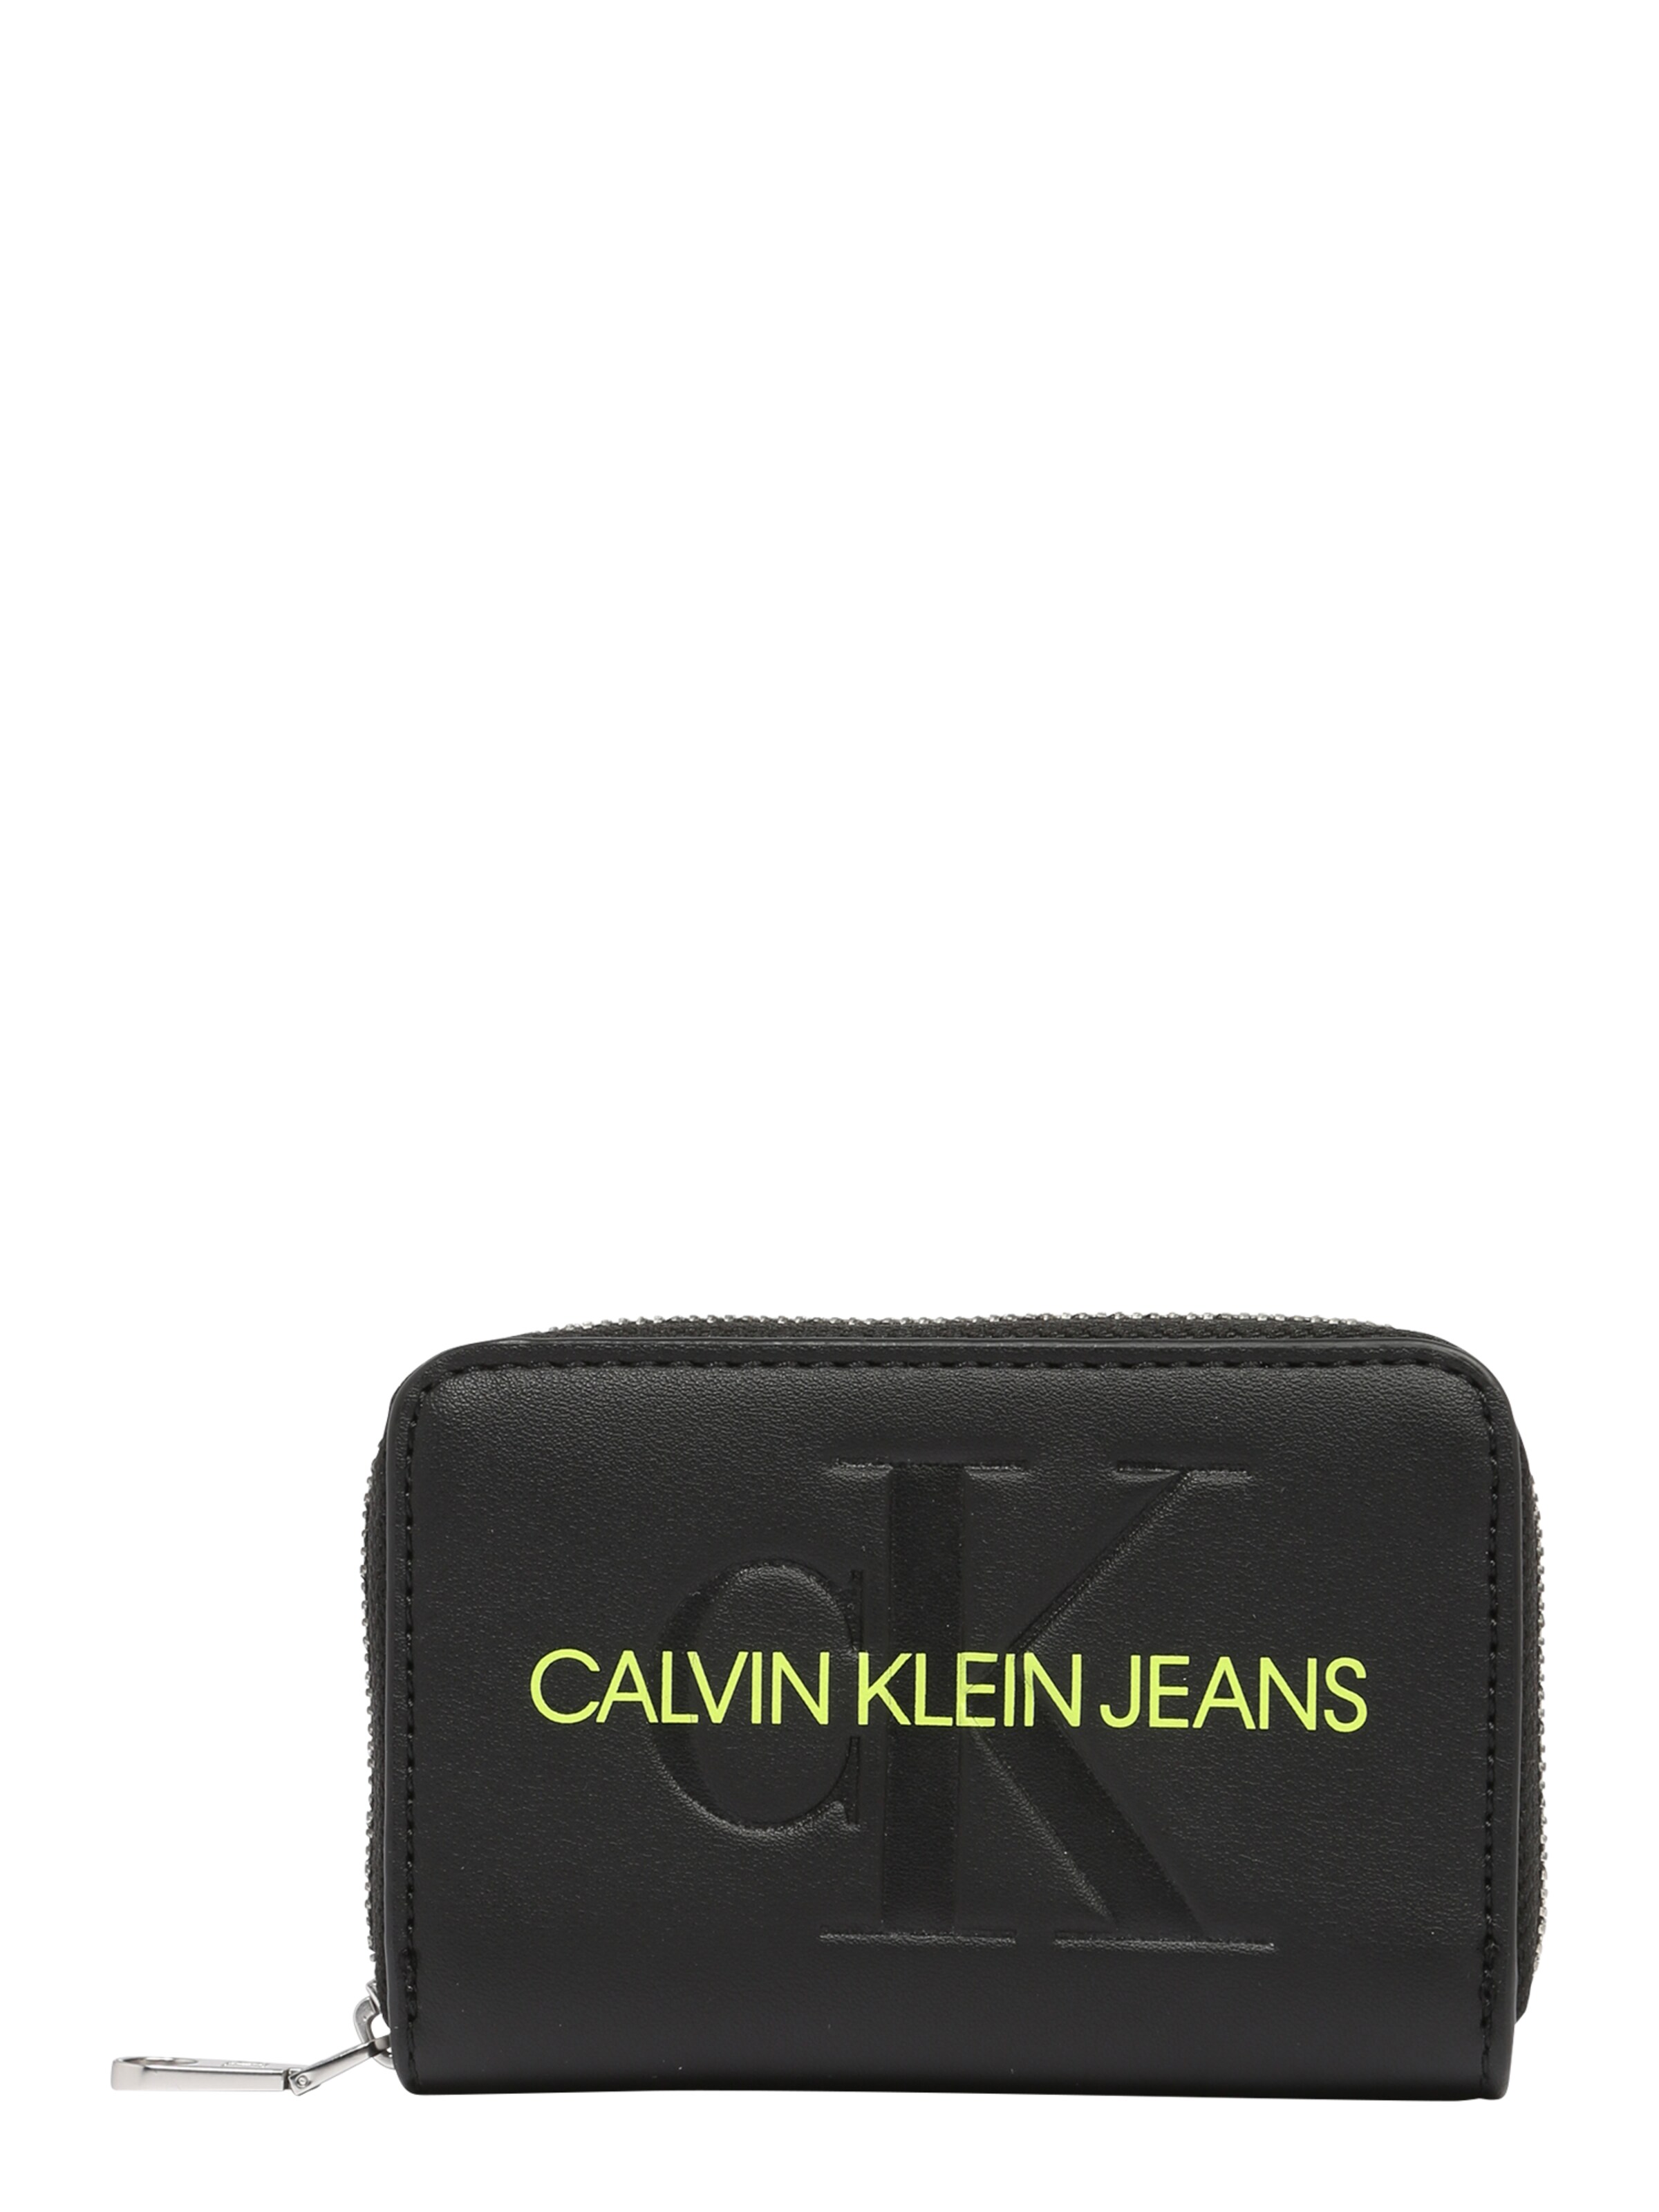 Femme Porte-monnaies Calvin Klein Jeans en Noir 